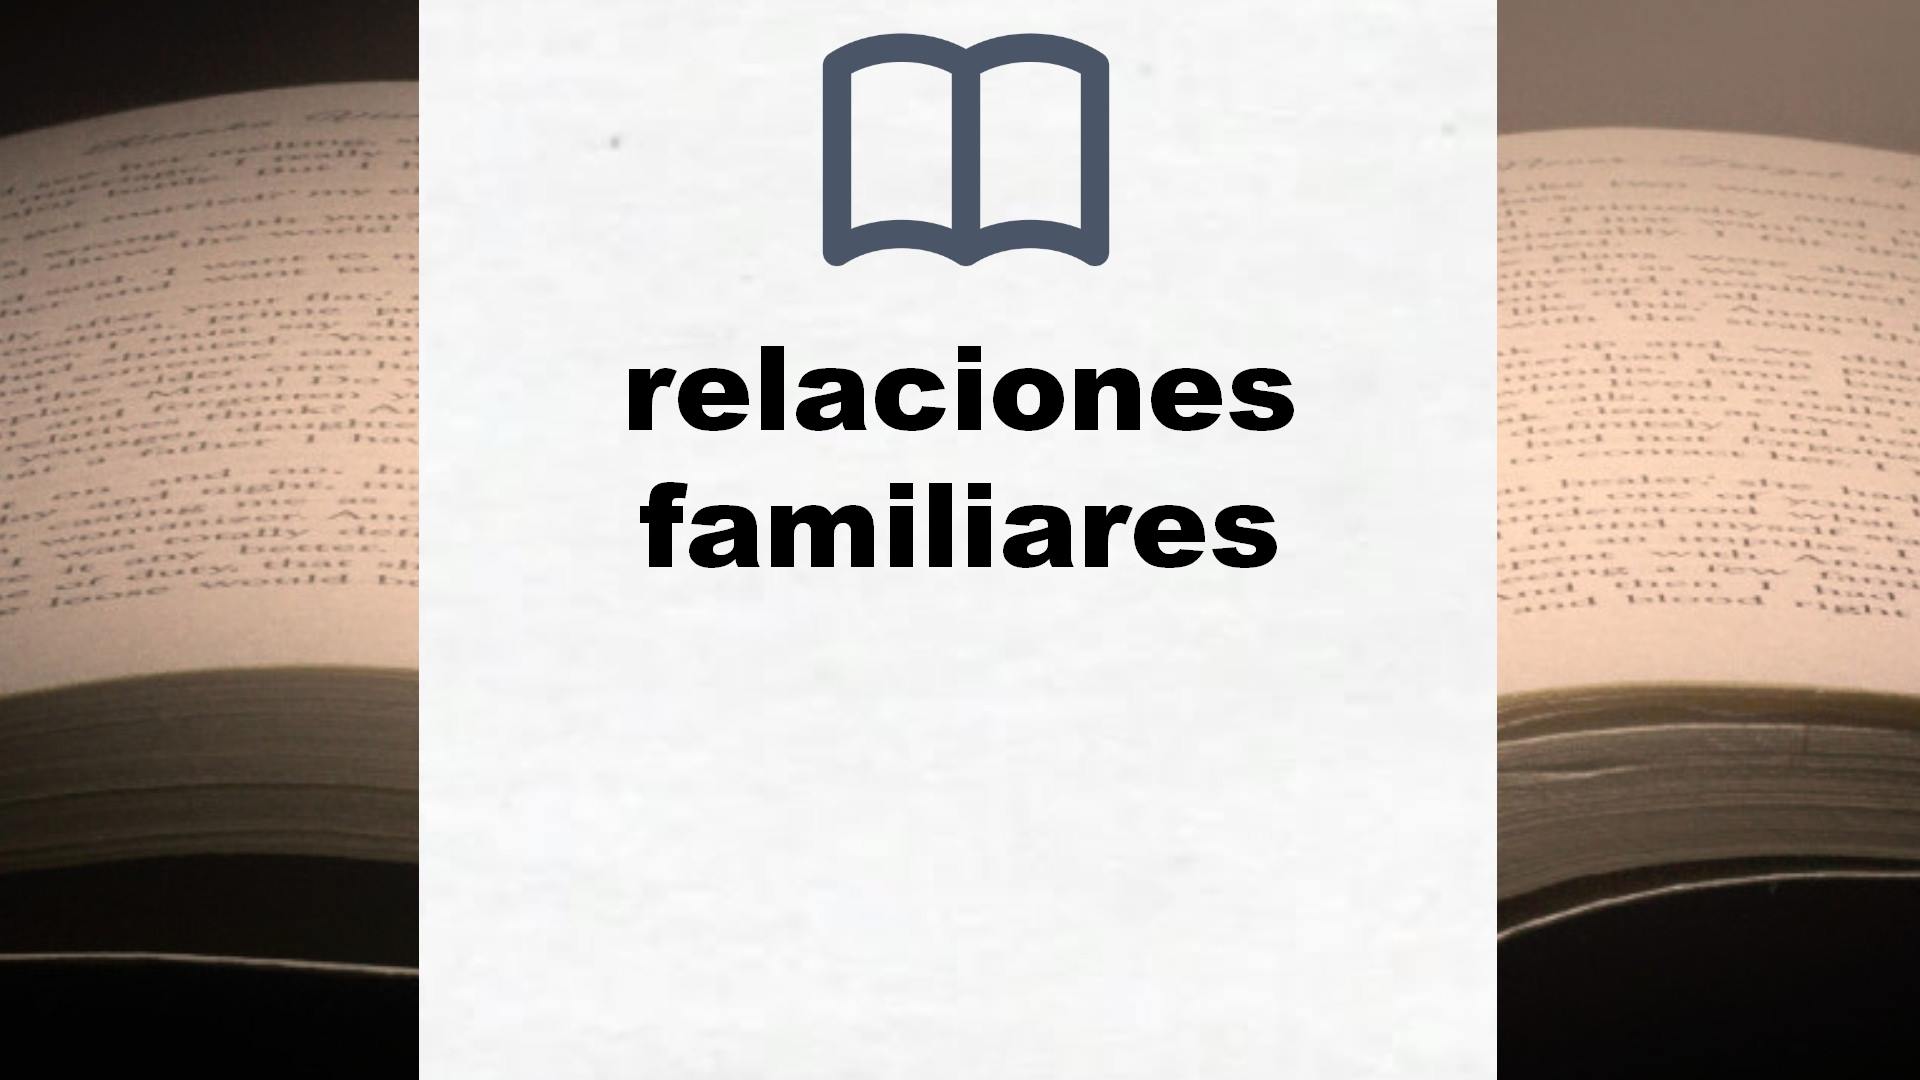 Libros sobre relaciones familiares